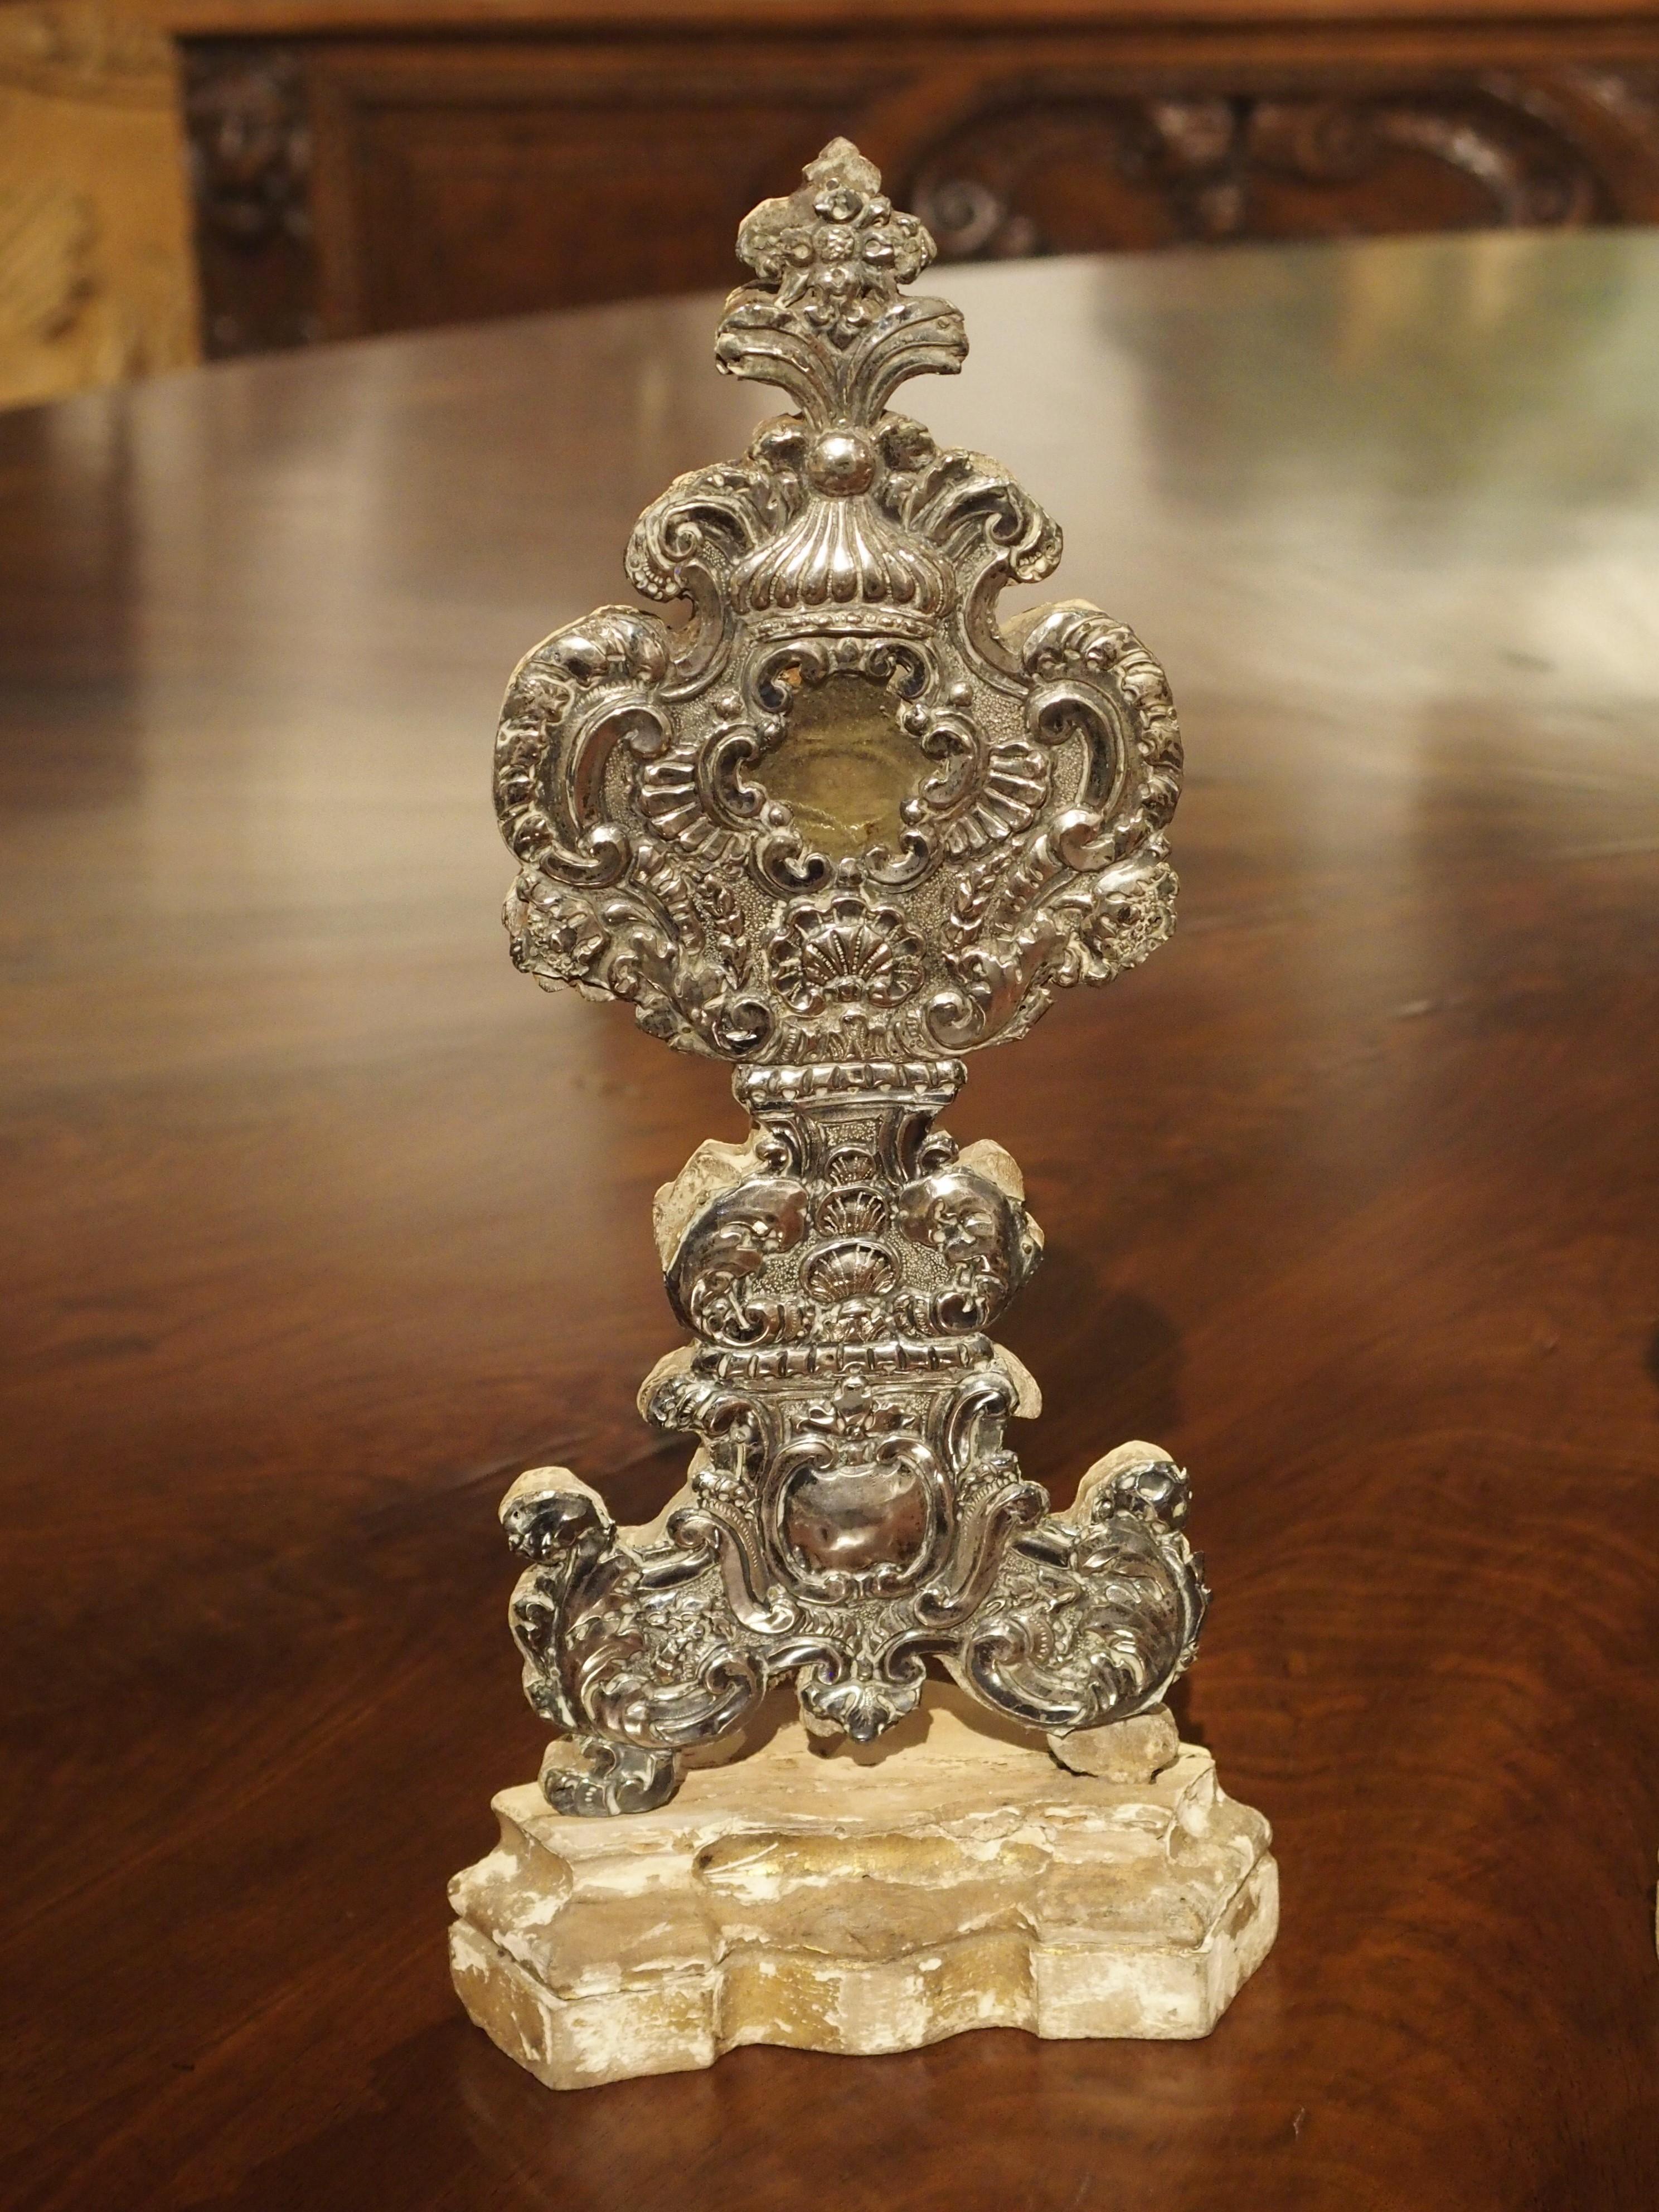 Dieses Paar versilberter Holzreliquiare stammt aus Frankreich, ca. 1750. Die Rückseiten sind noch durch Wachssiegel geschützt, was darauf hindeutet, dass die Reliquien nie entfernt wurden.

Jeder Reliquienschrein hat ein graviertes Stück Silber,